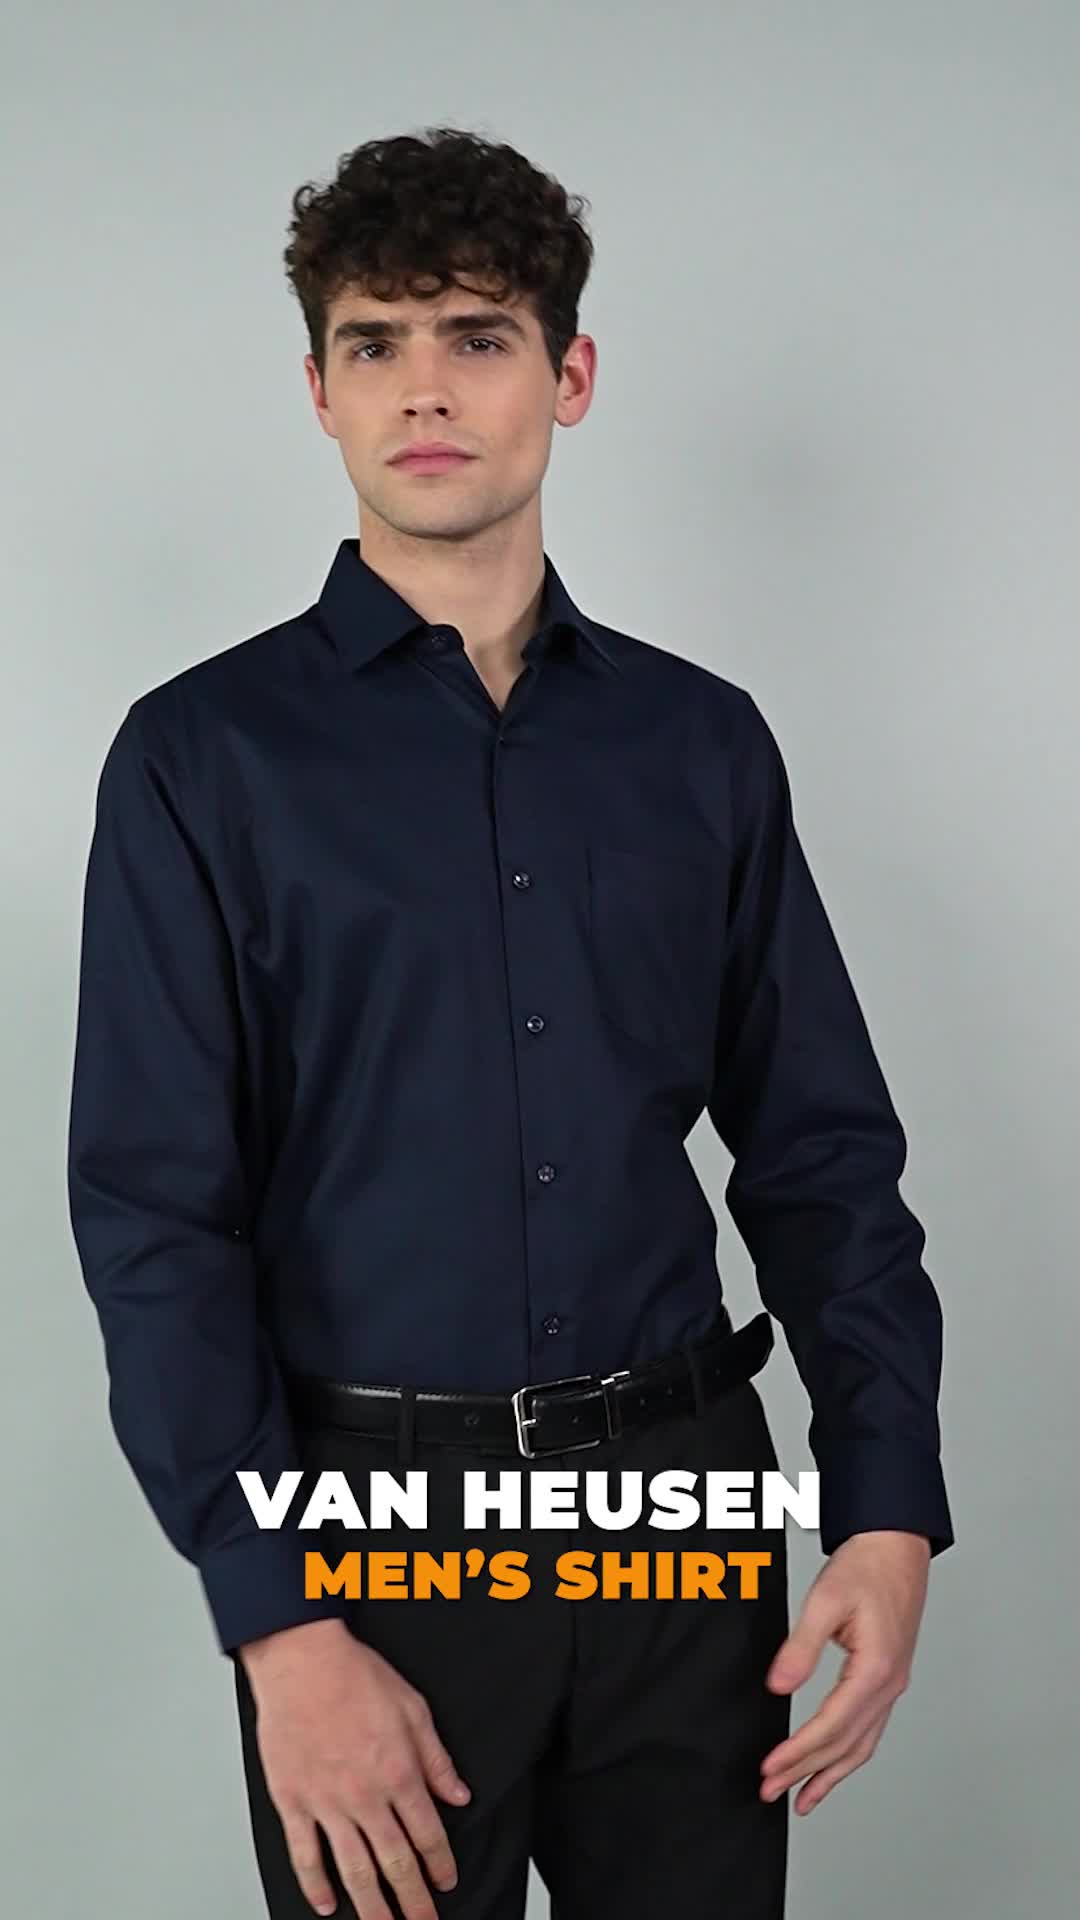 Van Heusen Men's Shirt